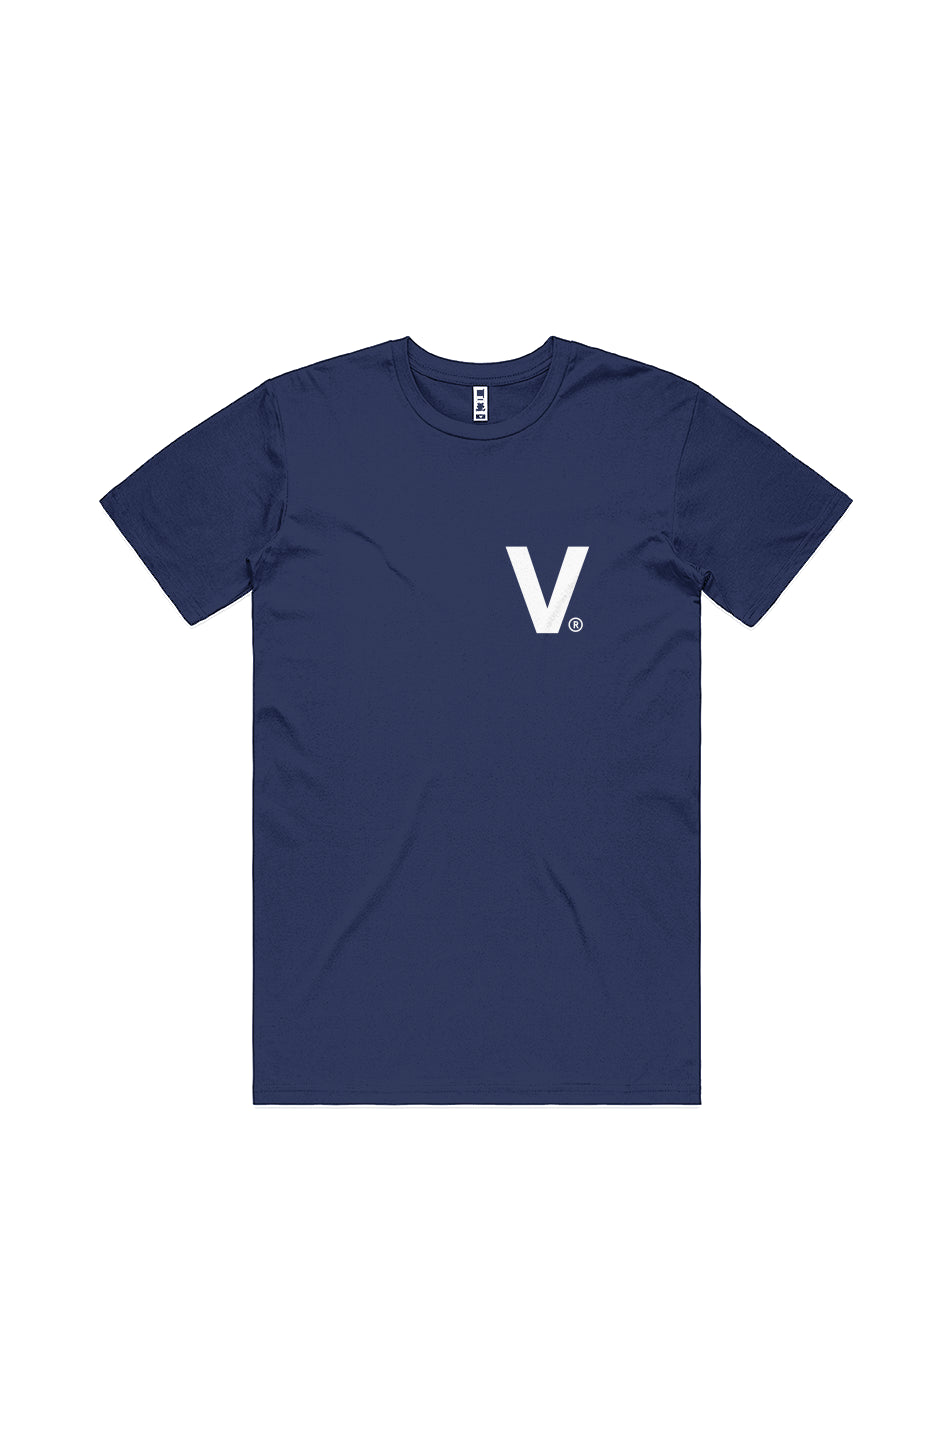 Varcity ® Fundamentals Iconic V  LT Logo T Shirt Navy